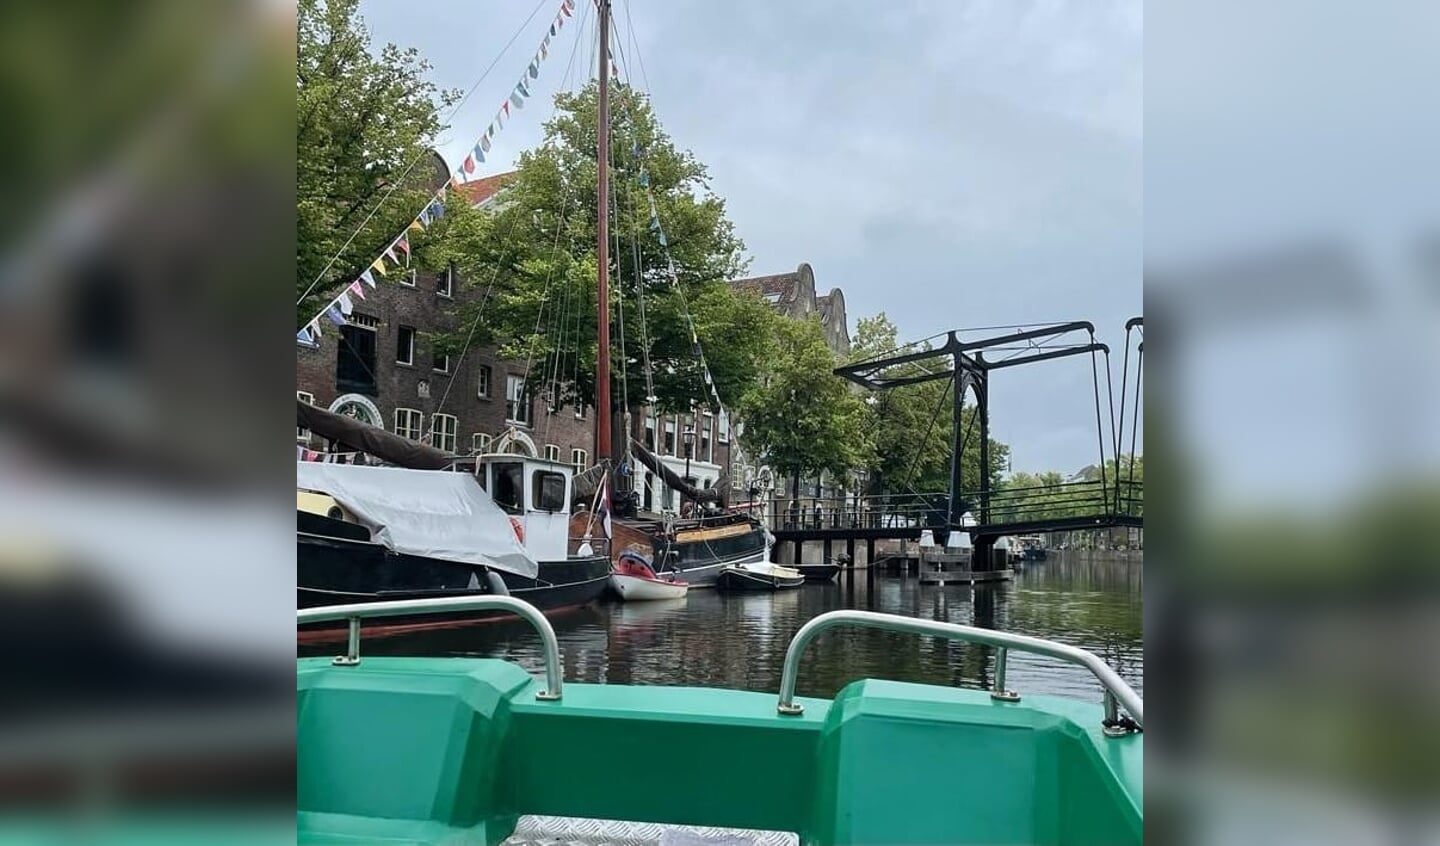 Speel deze zomer afvalbingo op de waterfiets in Schiedam Centrum.